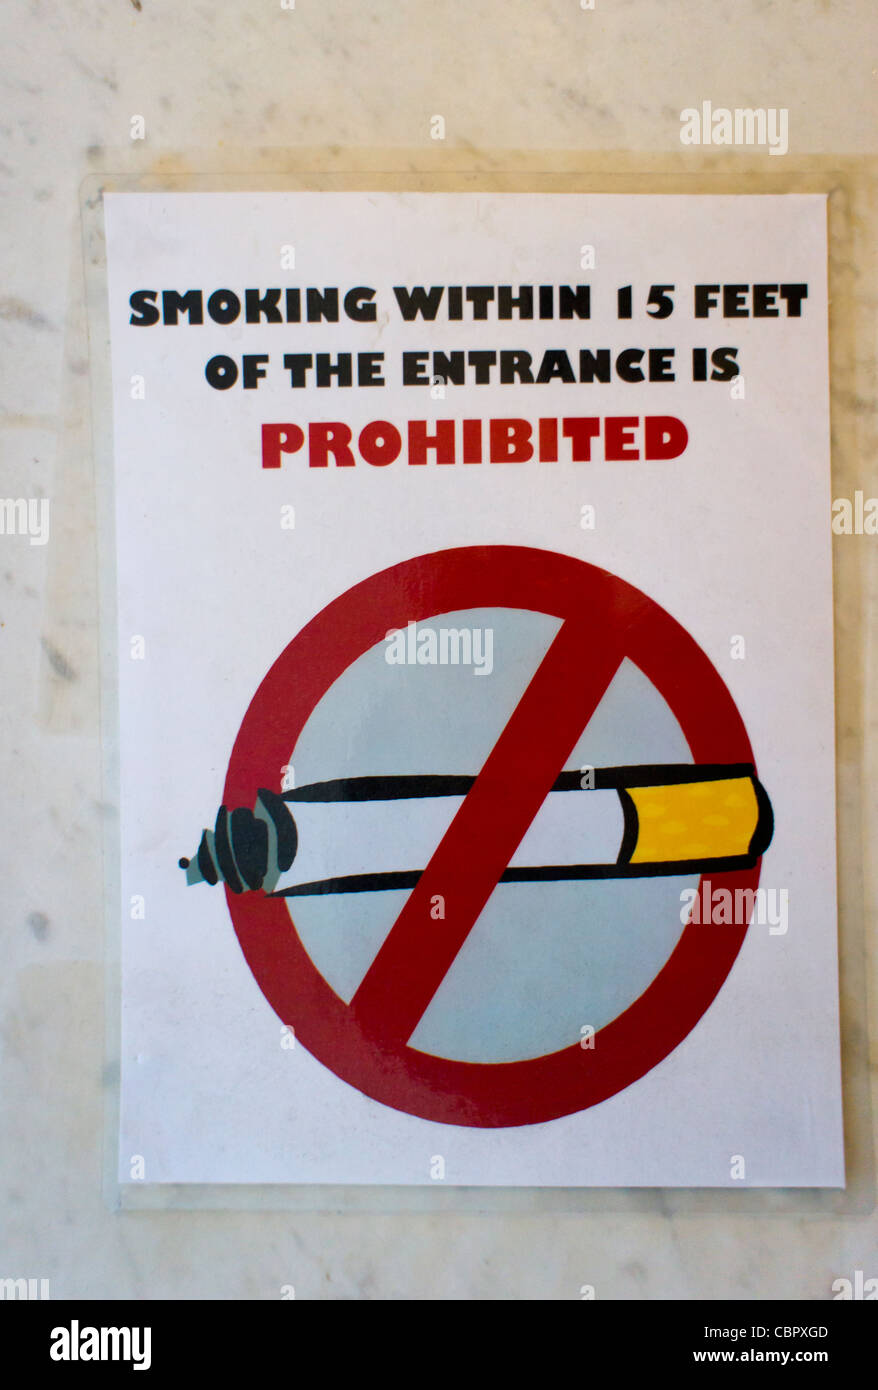 Rotulación de prohibido fumar – ICI